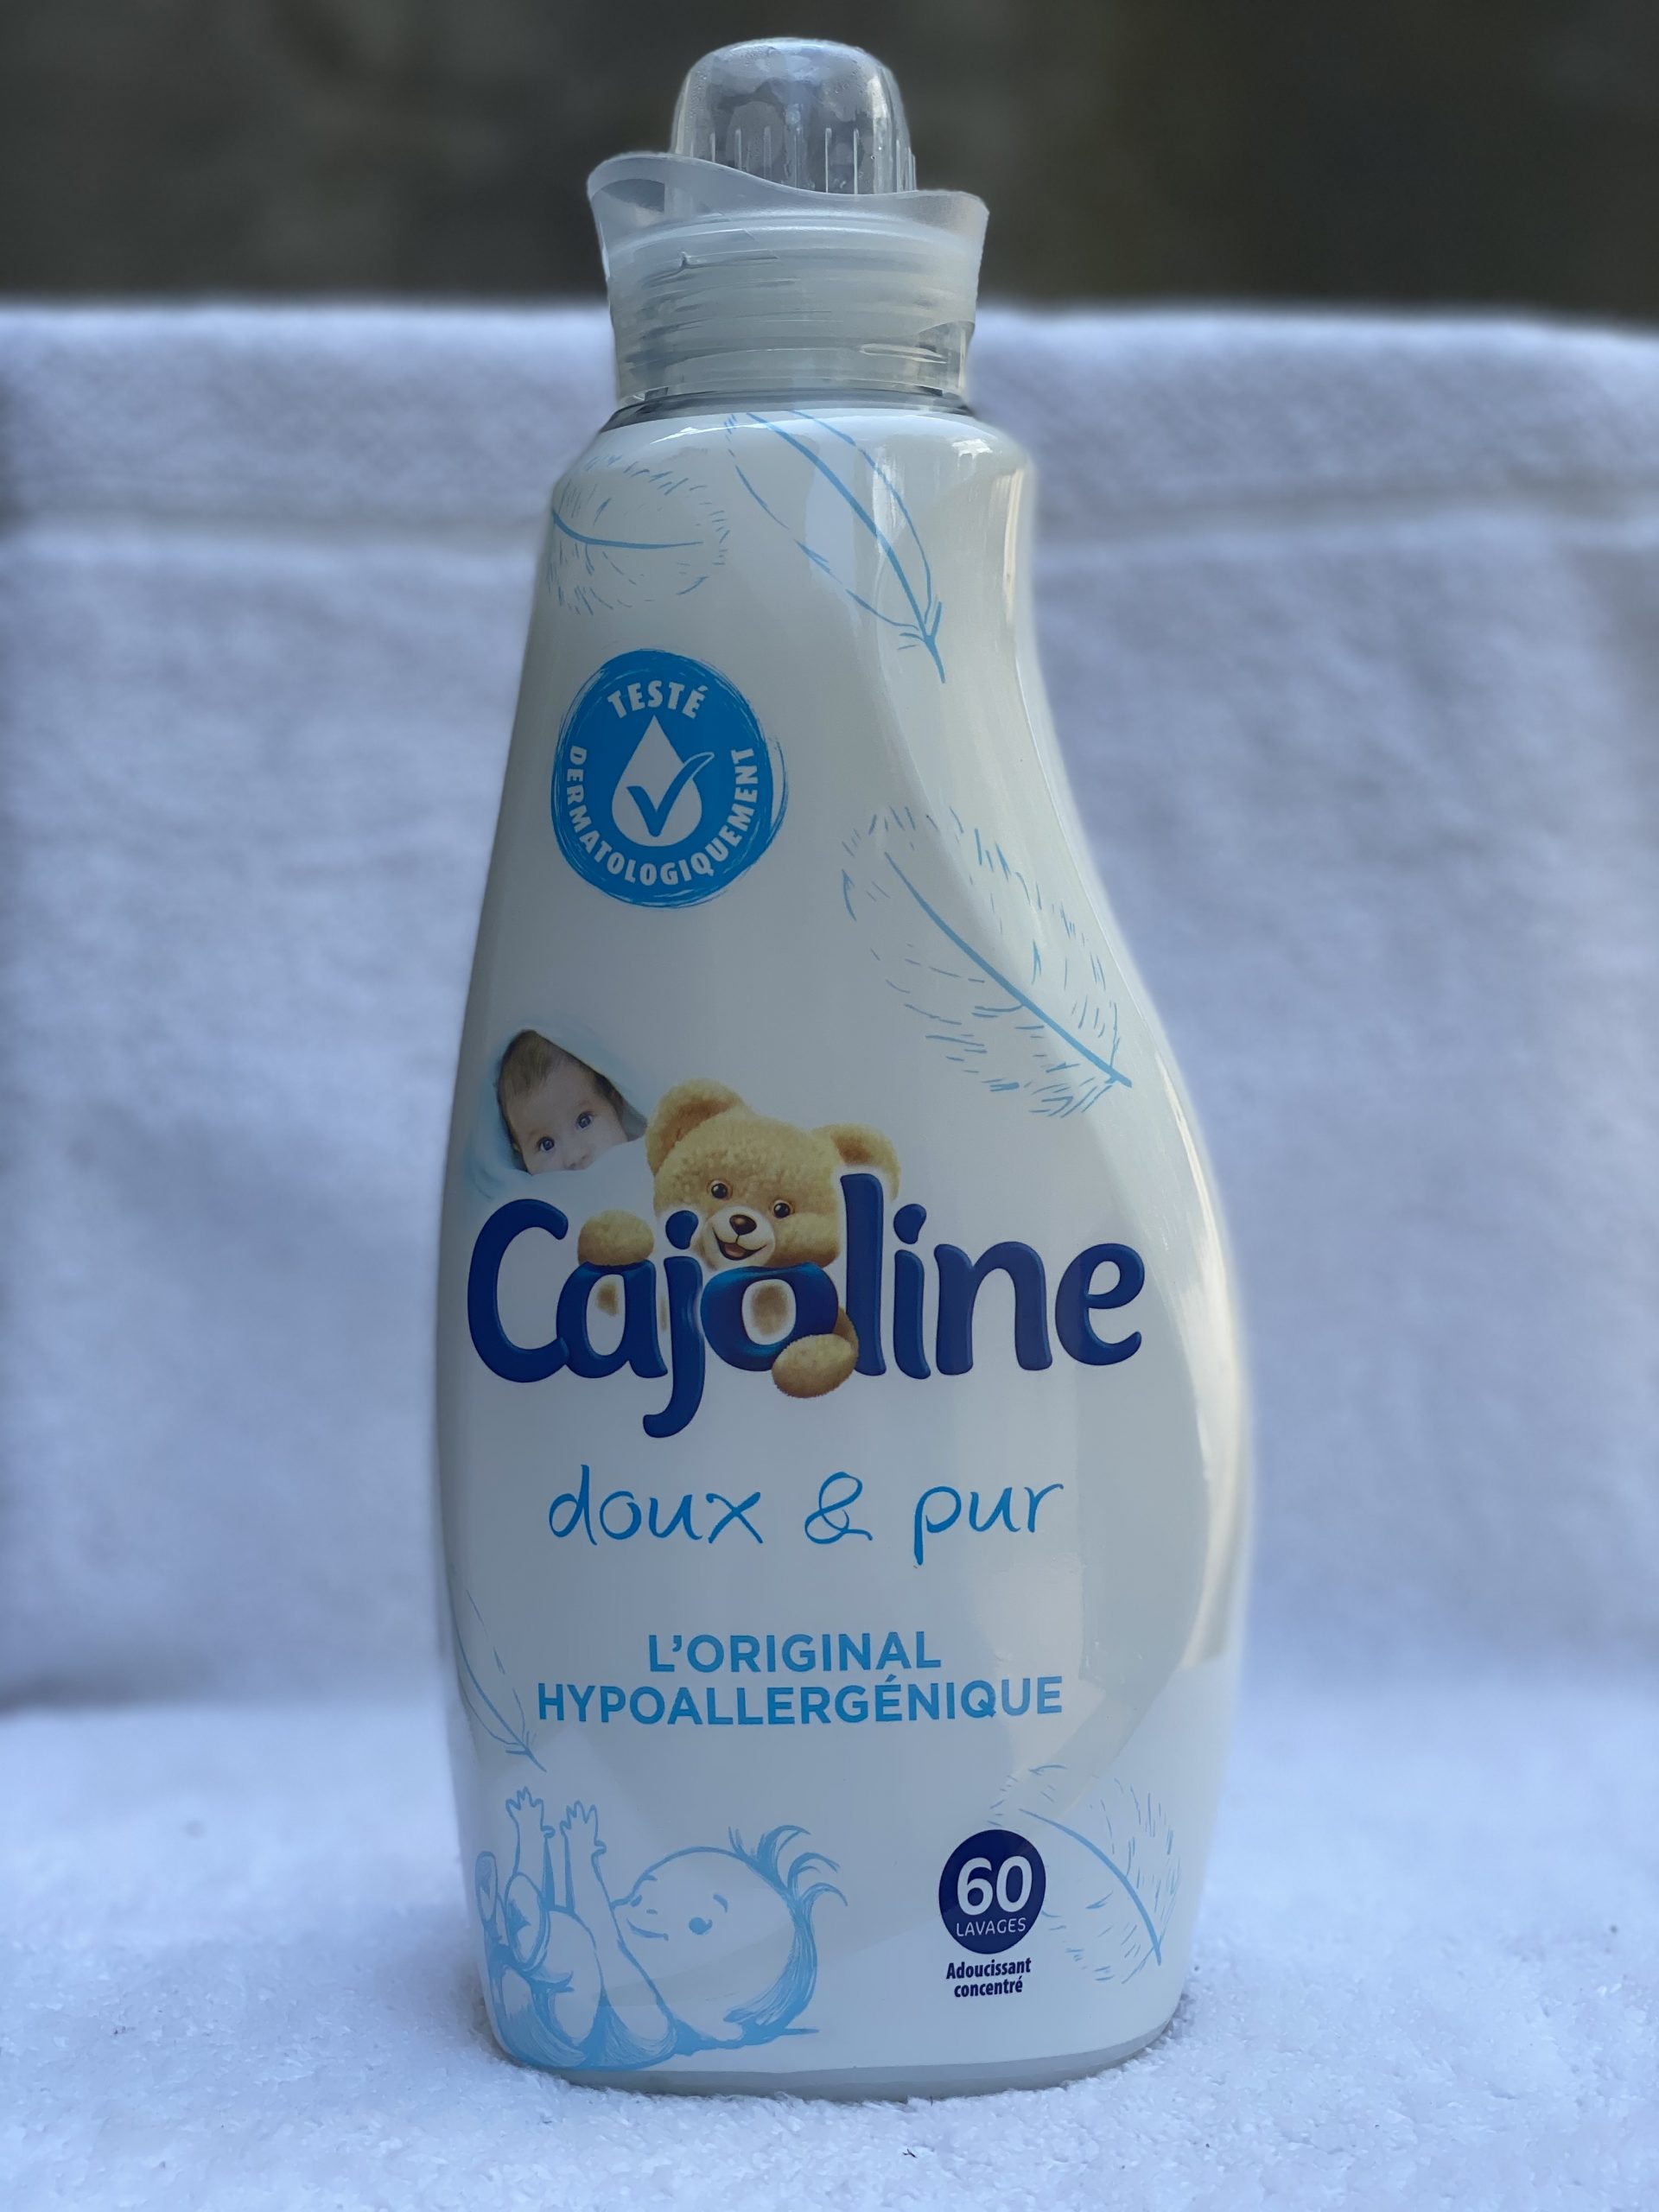 Cajoline Doux & Pur L’original hypoallergénique 60 lavages